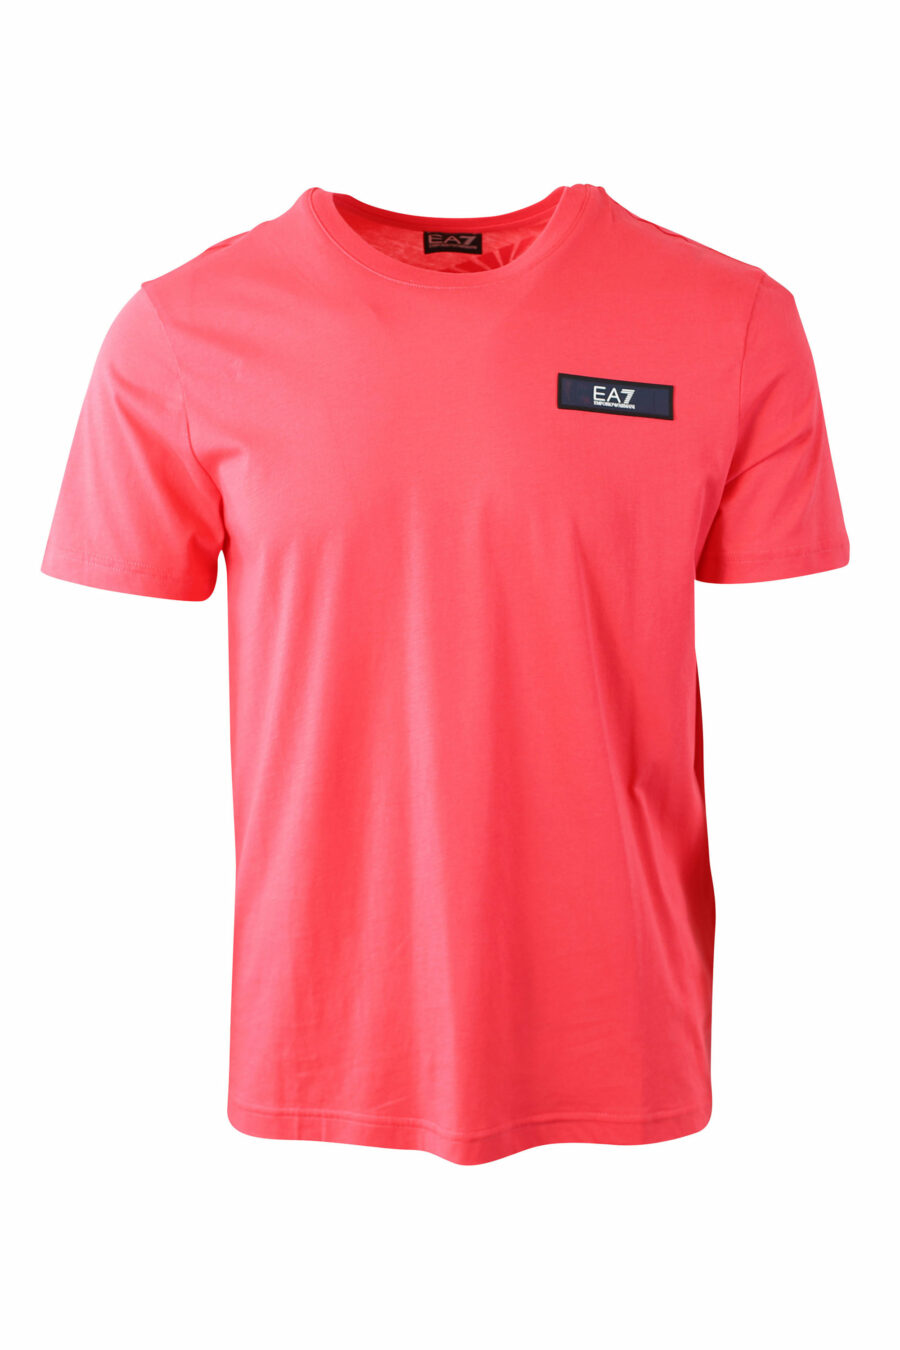 T-shirt corail avec mini logo sur patch rectangulaire - IMG 0053 1